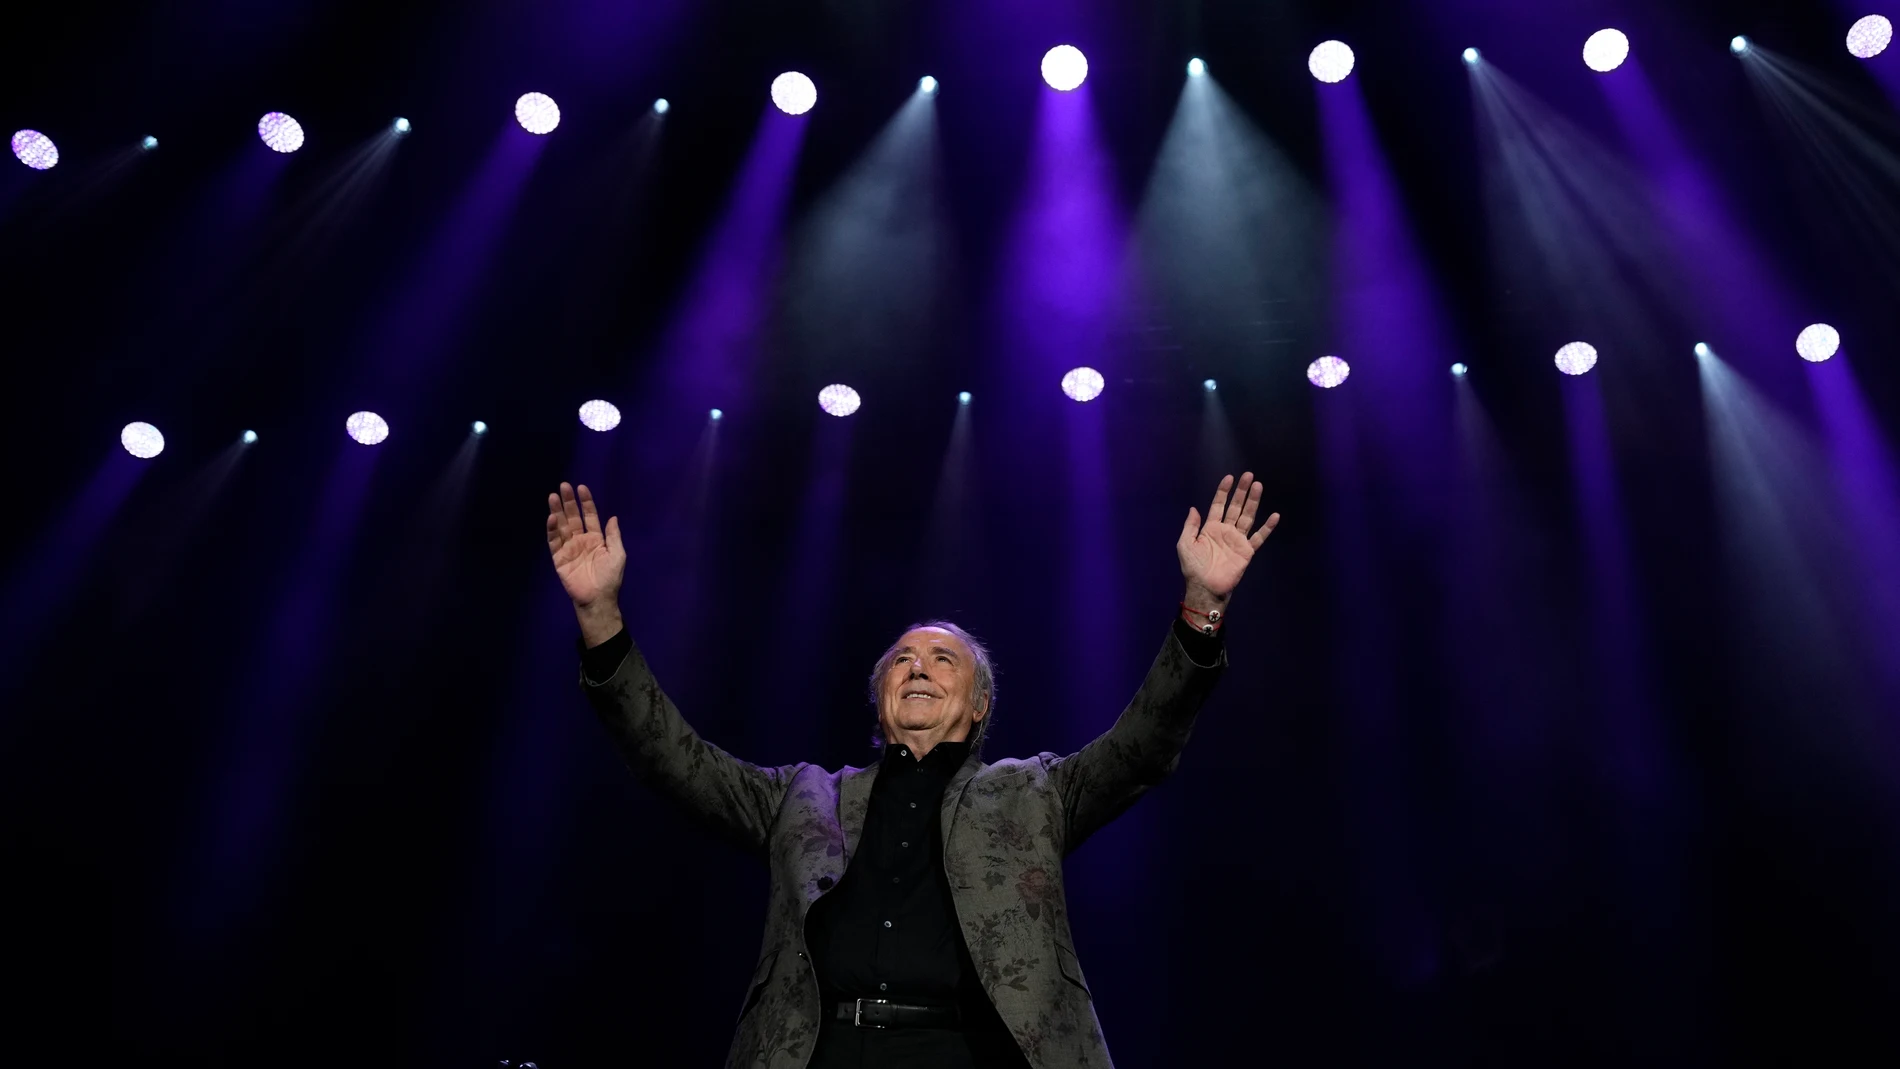 El cantautor Joan Manuel Serrat durante el concierto en que dice el adiós definitivo a los escenarios, tras 57 años de éxitos, en el ultimo evento de su gira de despedida